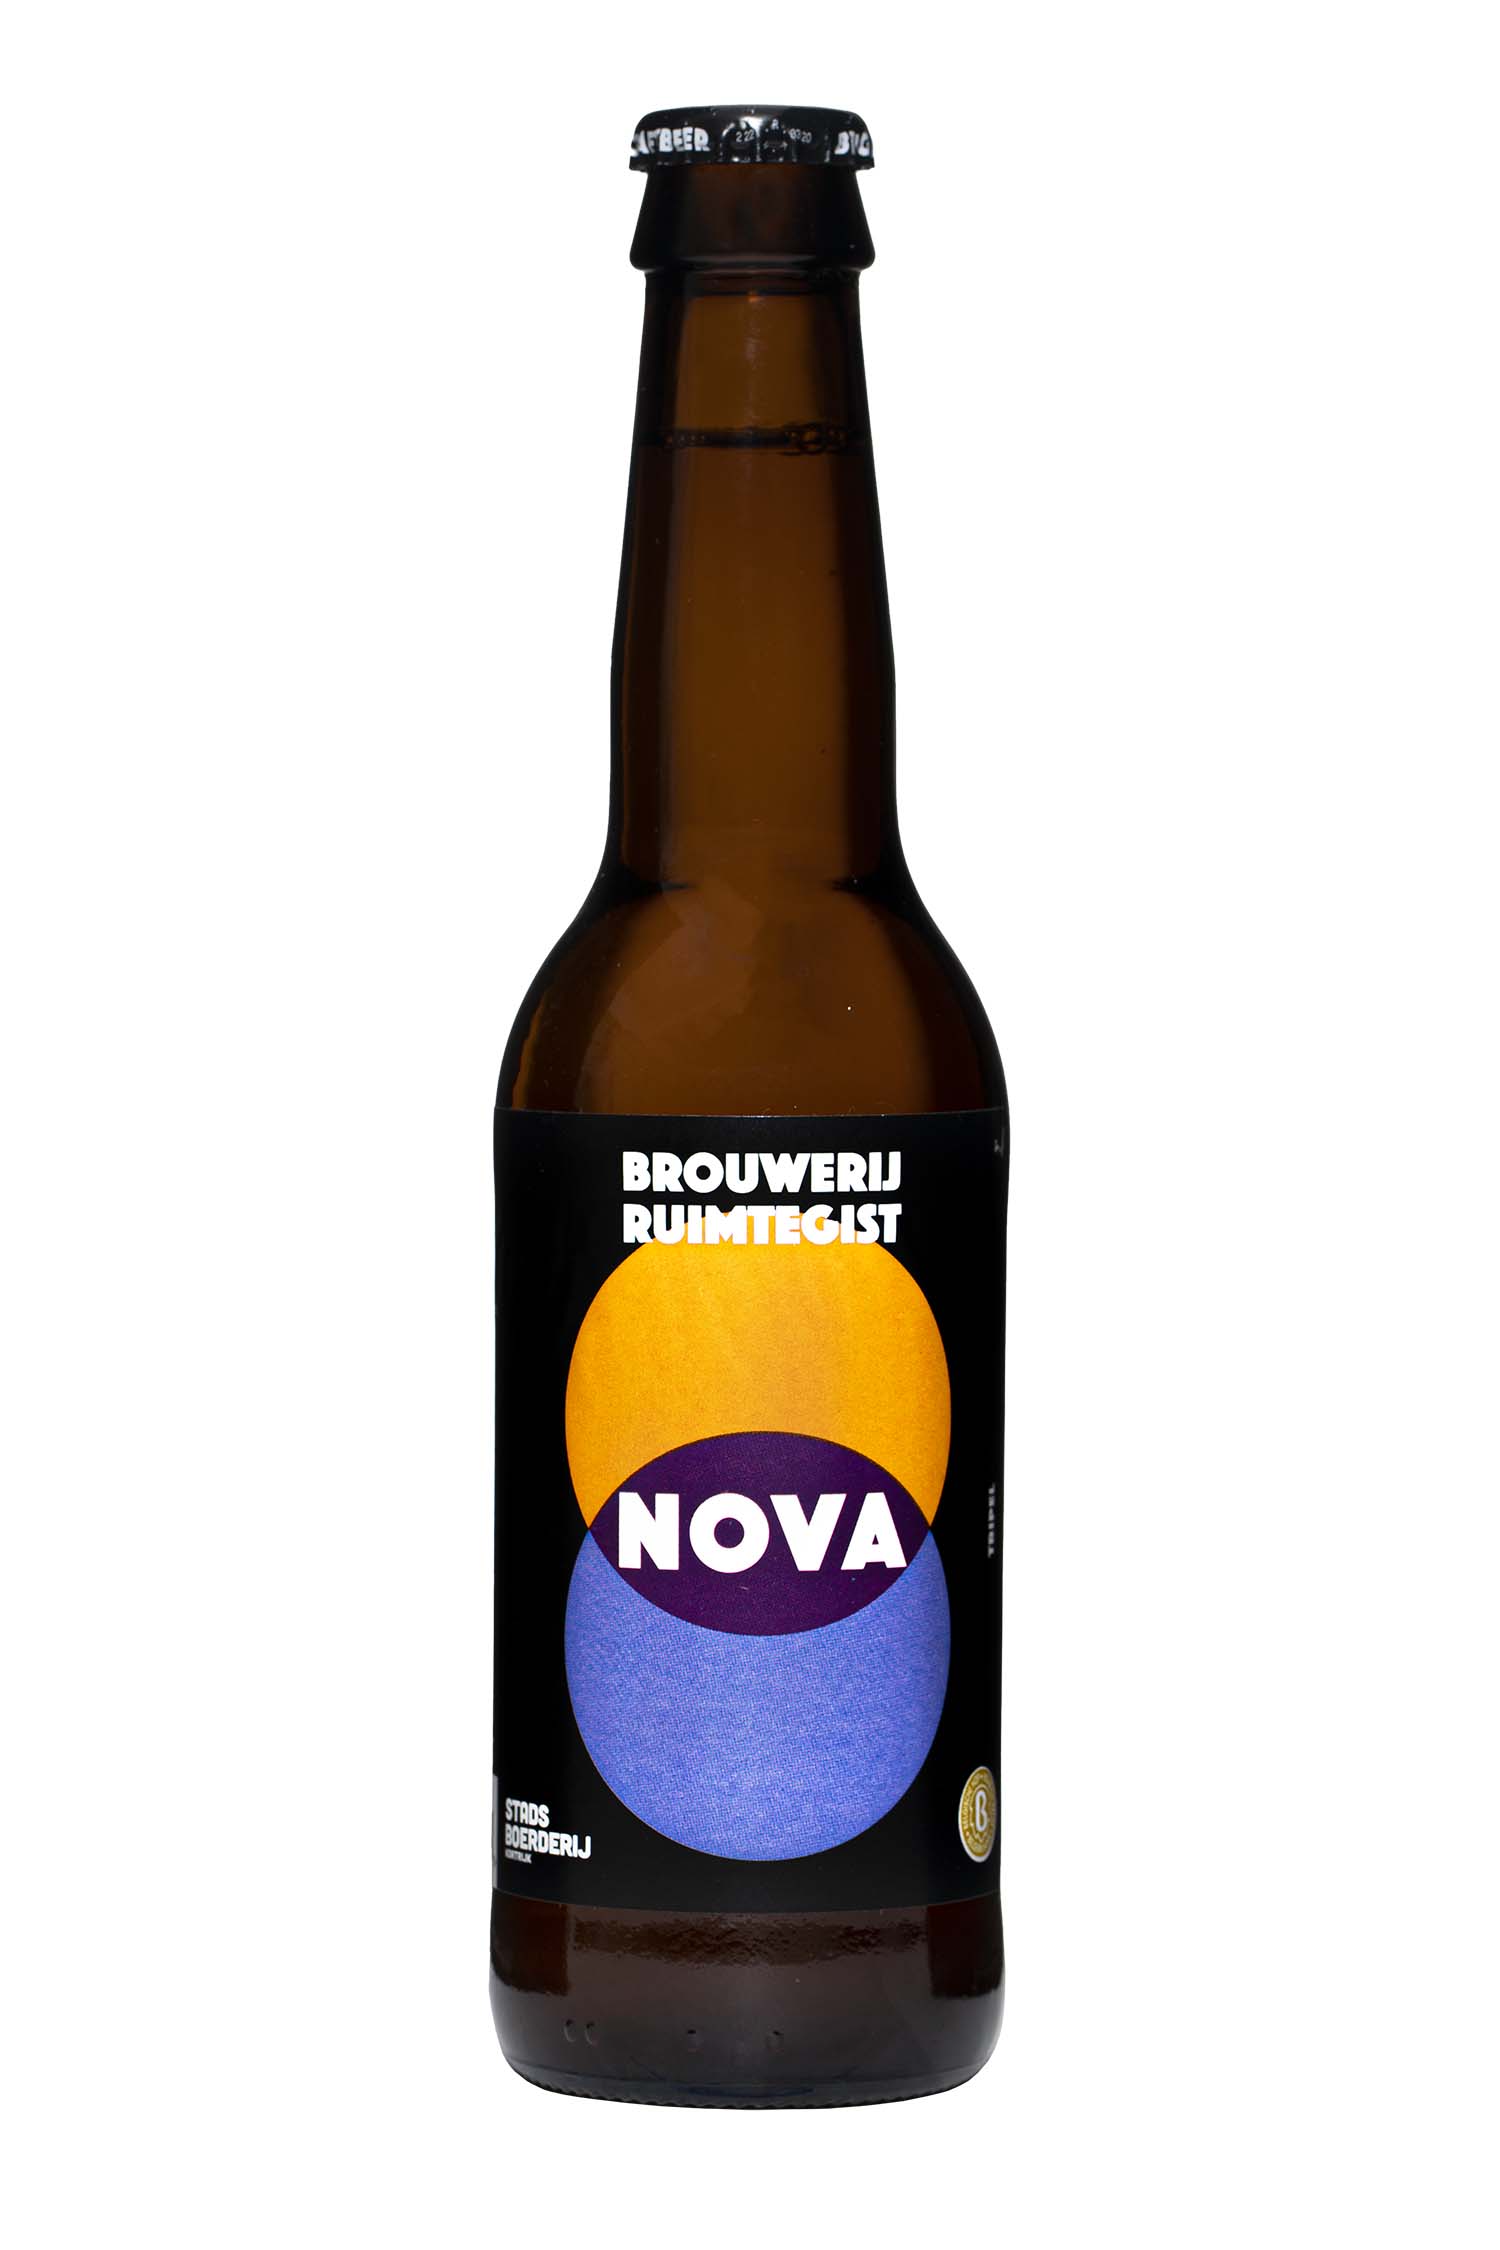 Nova - Brasserie Ruimtegist